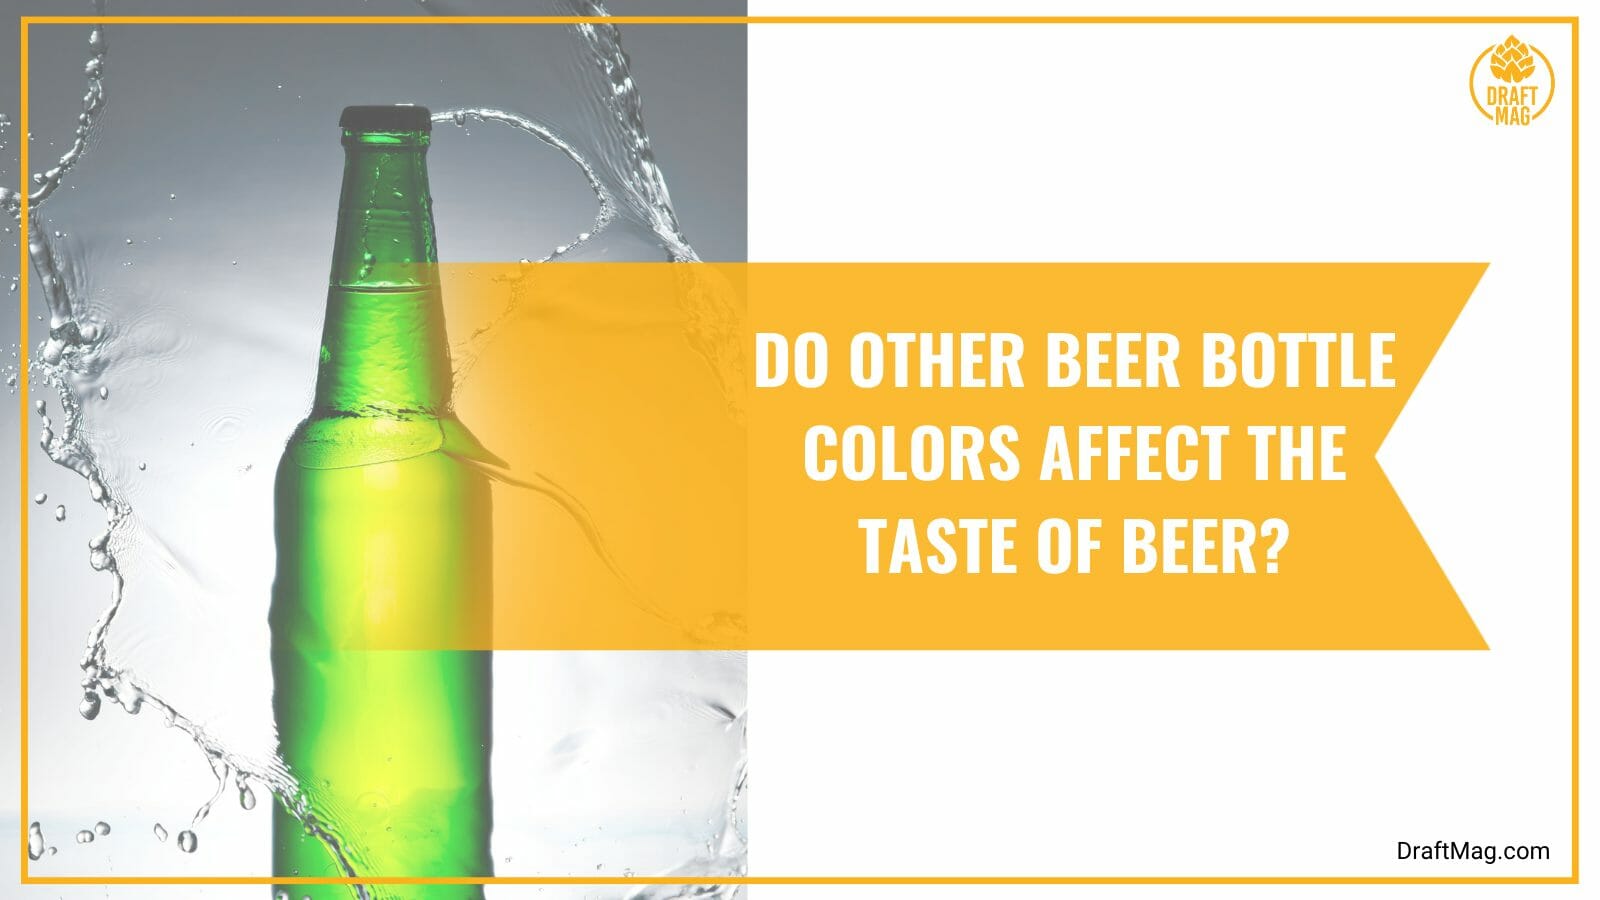 Beer bottle color affects the taste